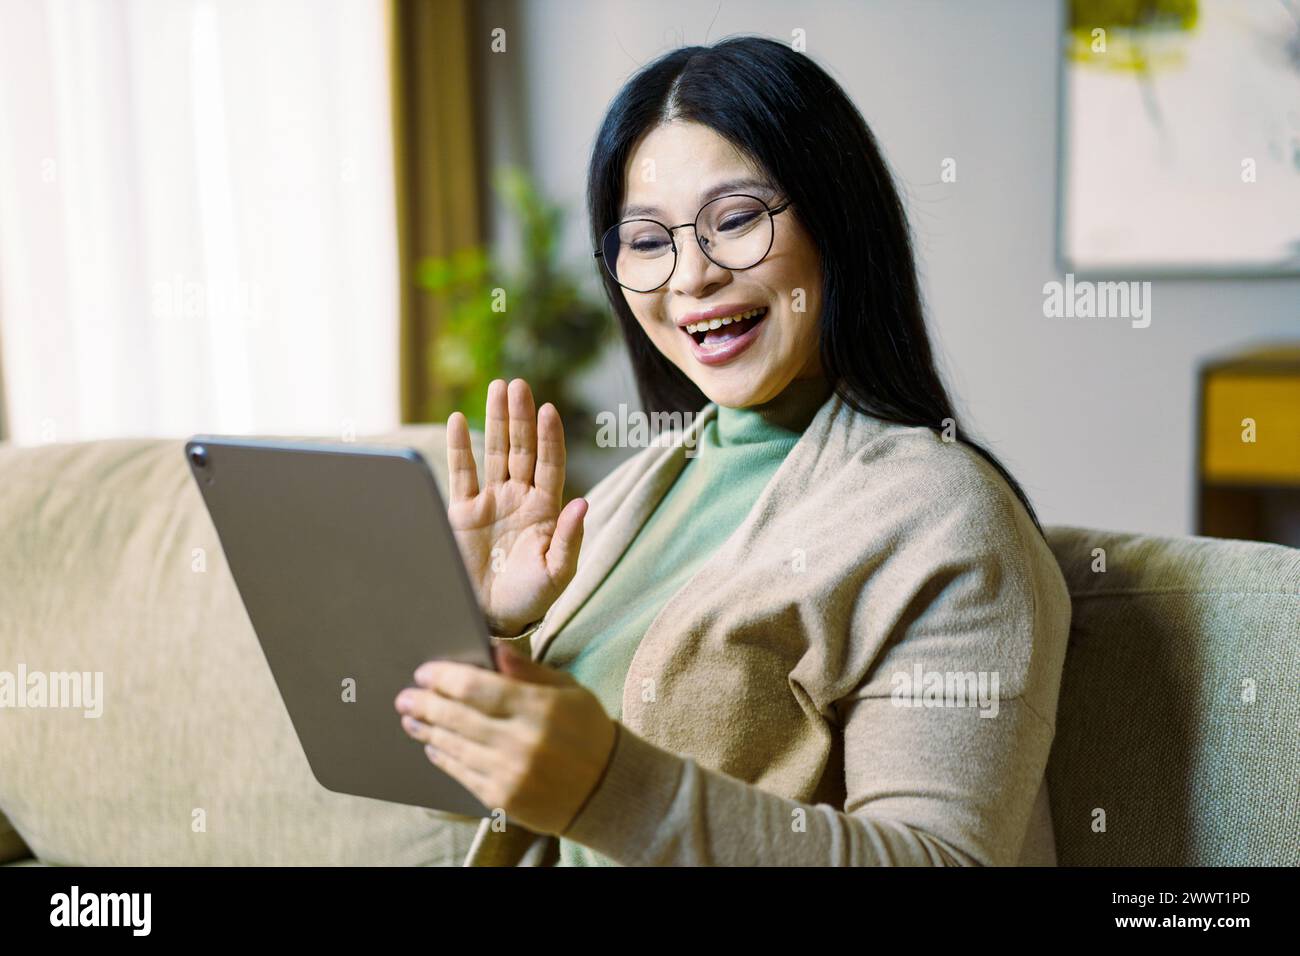 Una donna è seduta su un divano e sorride mentre tiene in mano un tablet. Sta salutando la telecamera, magari salutando qualcuno o esprimendo felicità. Conc Foto Stock